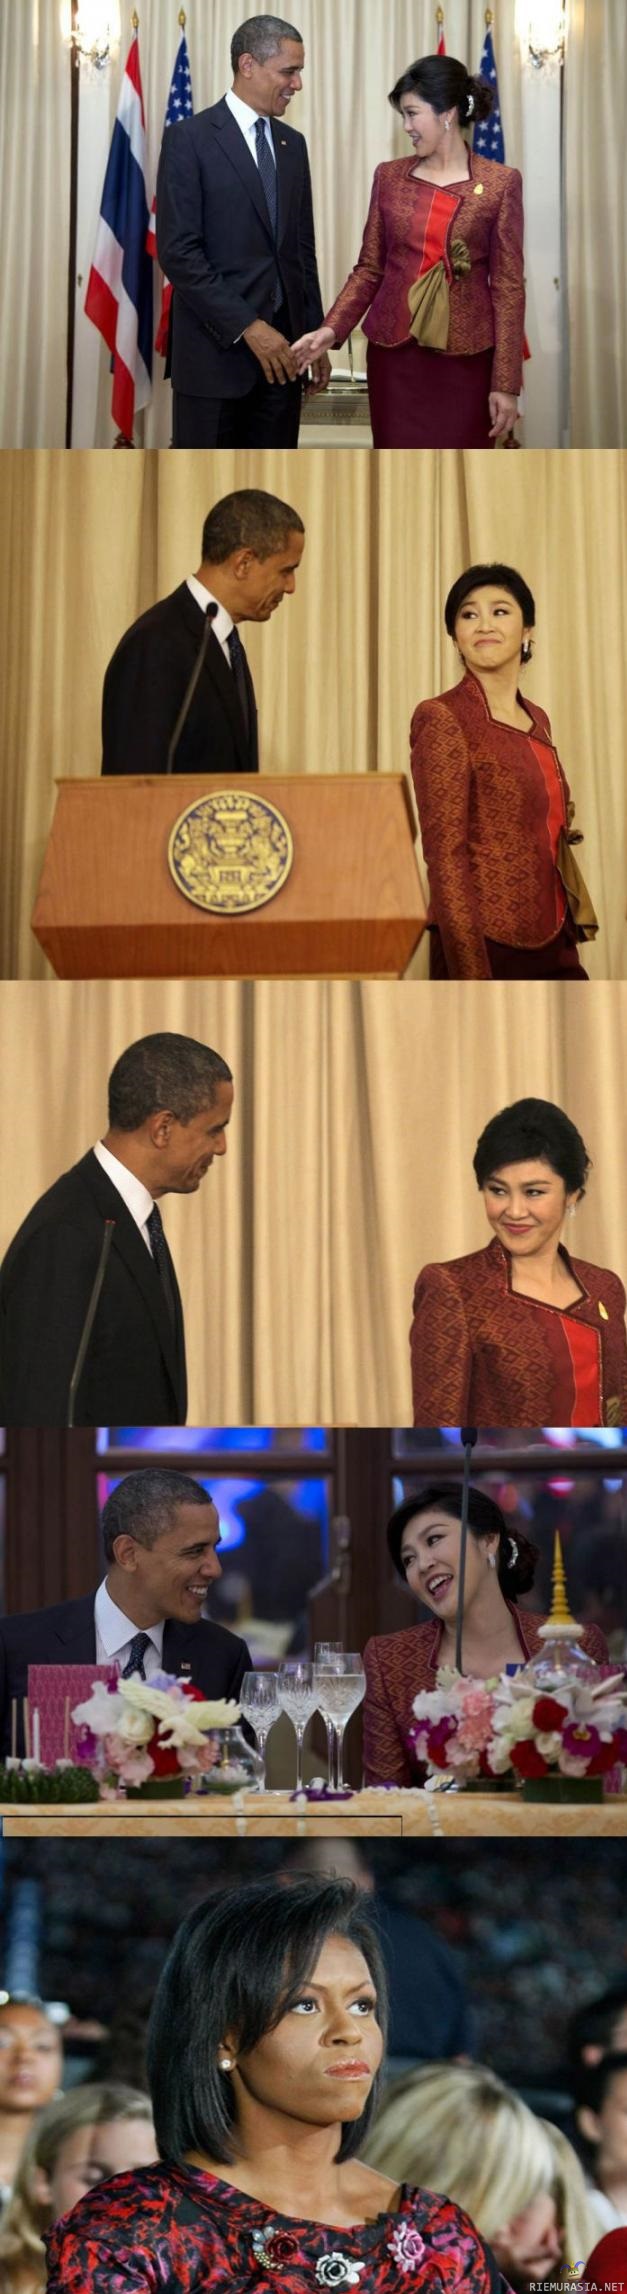 Obama ja thaimaan pääministeri